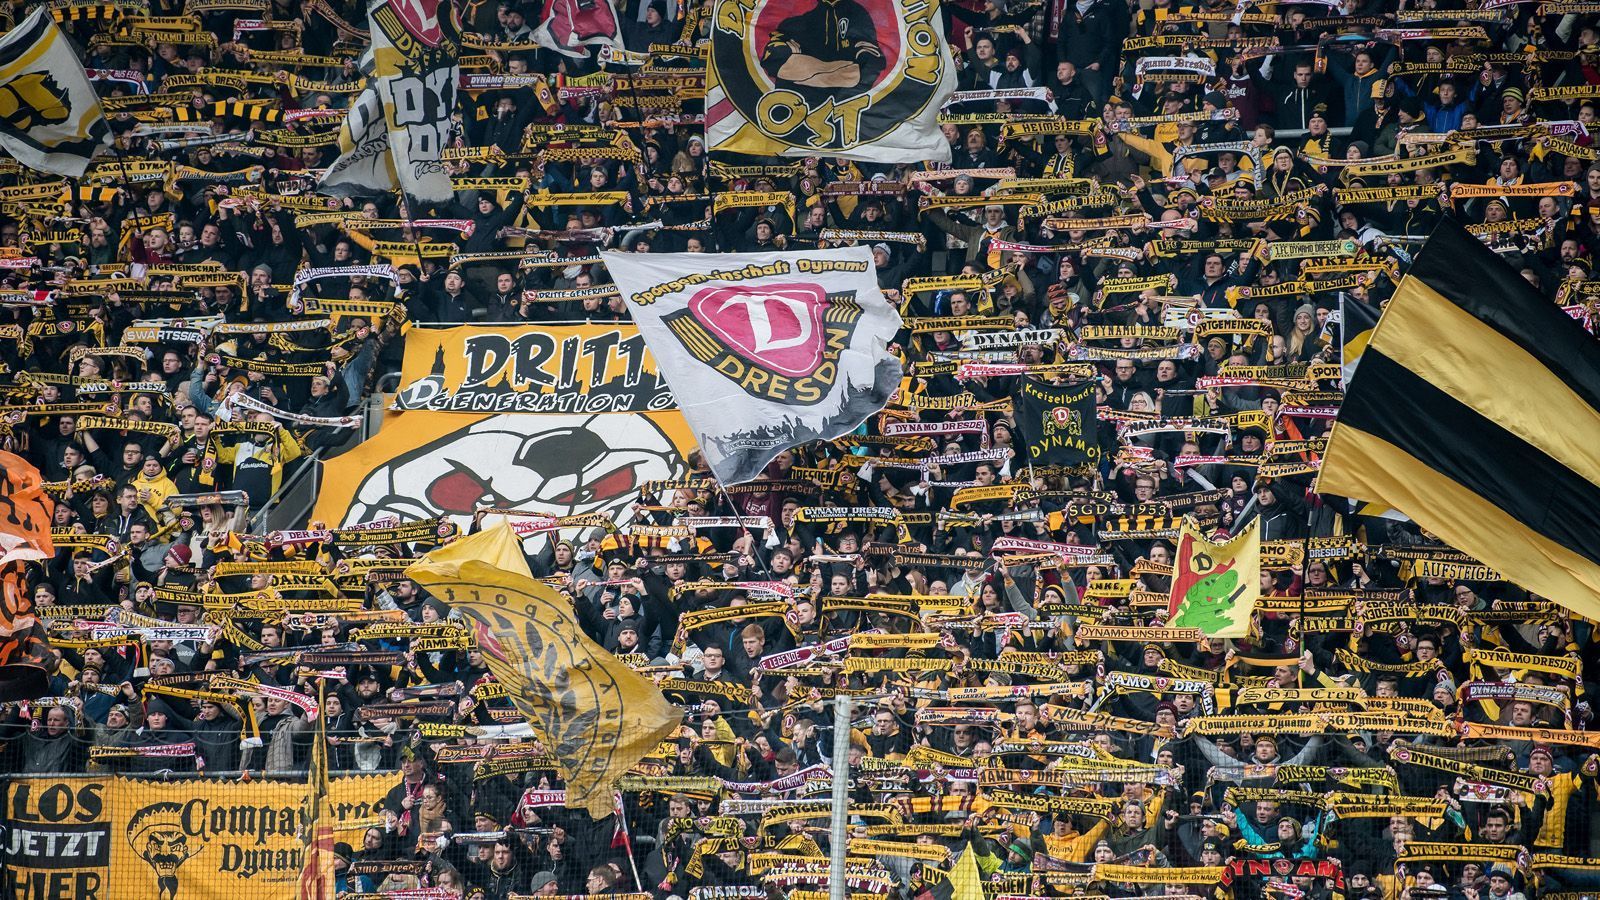 
                <strong>Dynamo Dresden</strong><br>
                Dynamo Dresdens Geschäftsführer Ralf Minge lehnte bislang den Einstieg eines Investors ab. "Wir tun gut daran, keine Abhängigkeiten einzugehen. Und man weiß nie, welcher Flurschaden dann eventuell hinterlassen wird", sagte Minge dem "Kicker". Neben dem Geschäftsführer sind auch große Teile der Fans gegen einen Geldgeber. Zudem ist die Profi-Abteilung des Vereins auch noch nicht ausgegliedert worden.
              